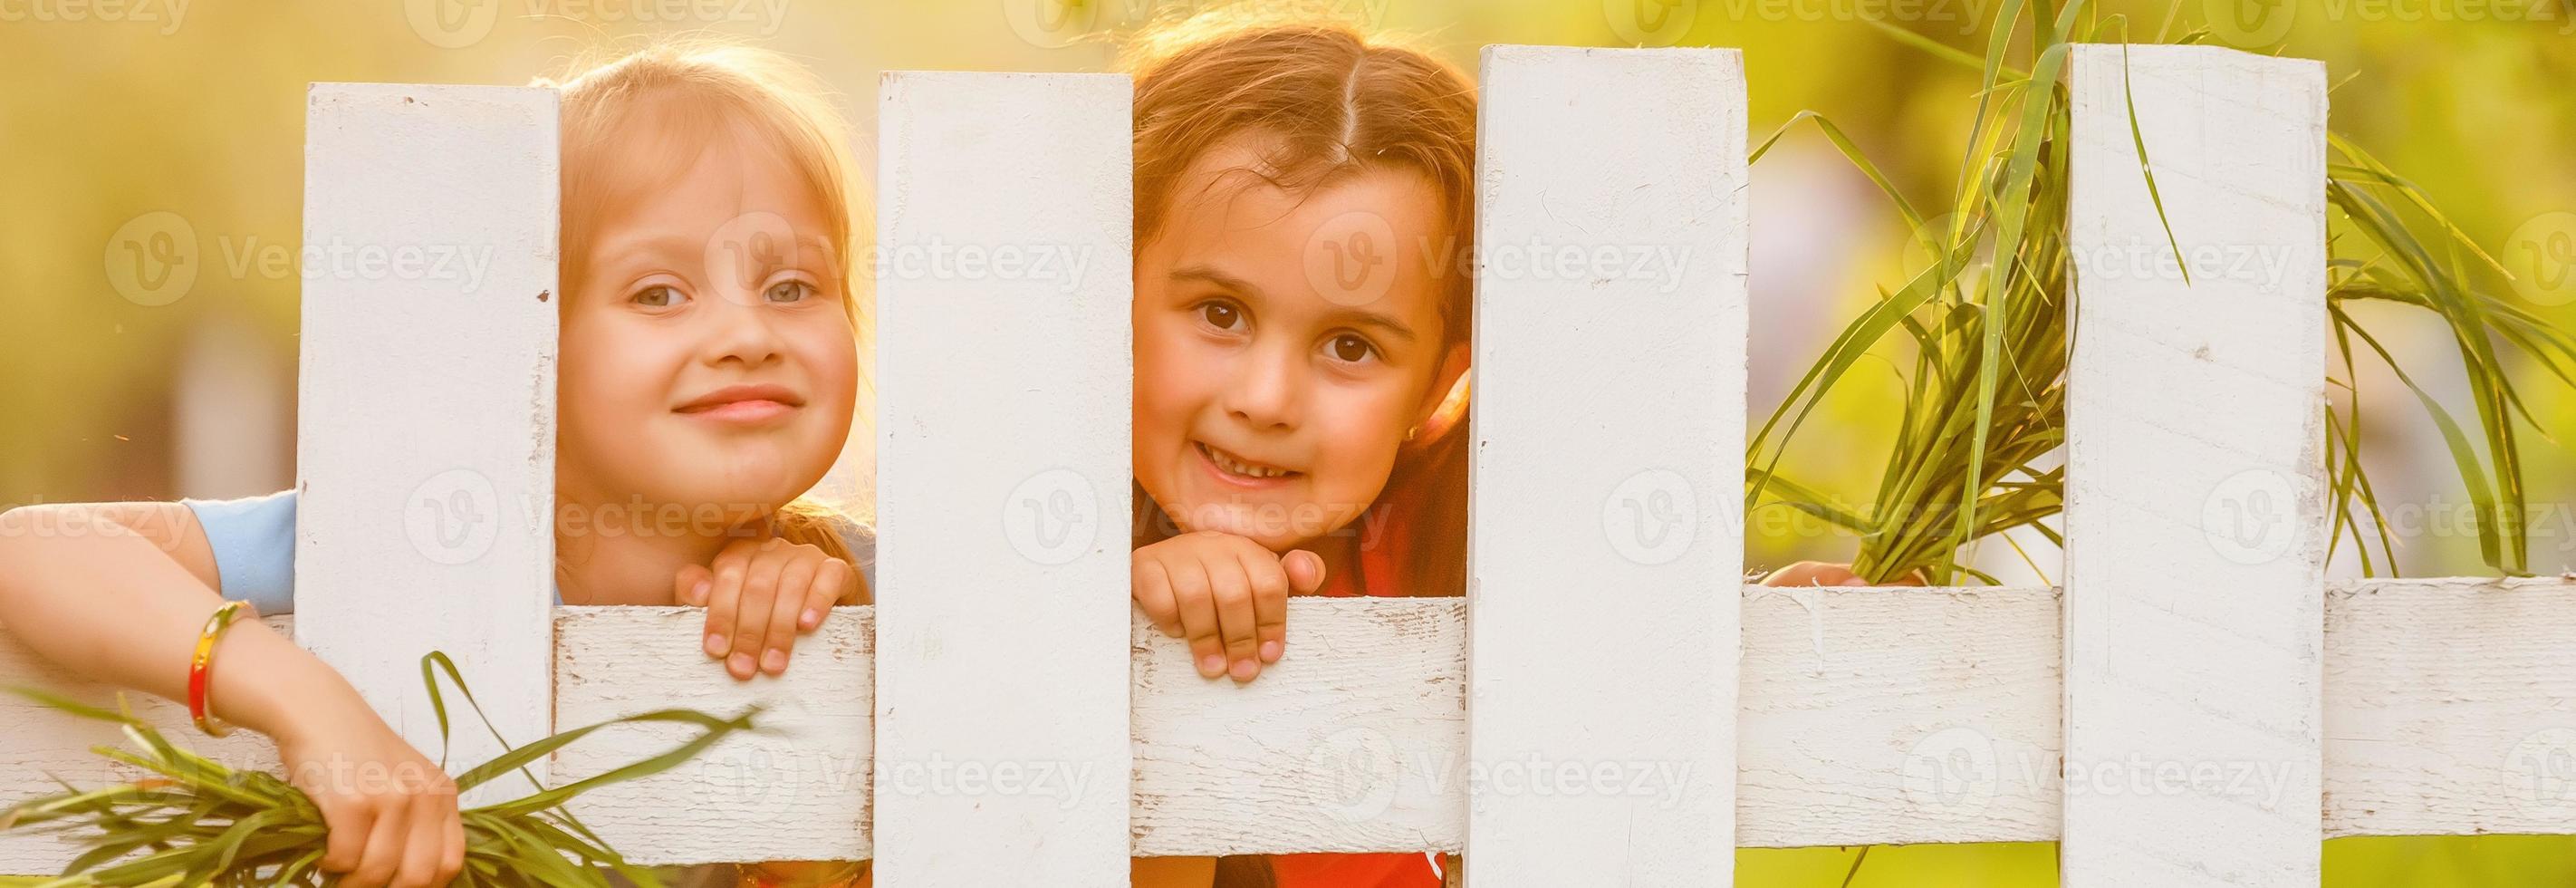 twee mooi jong meisjes in de tuin hek foto